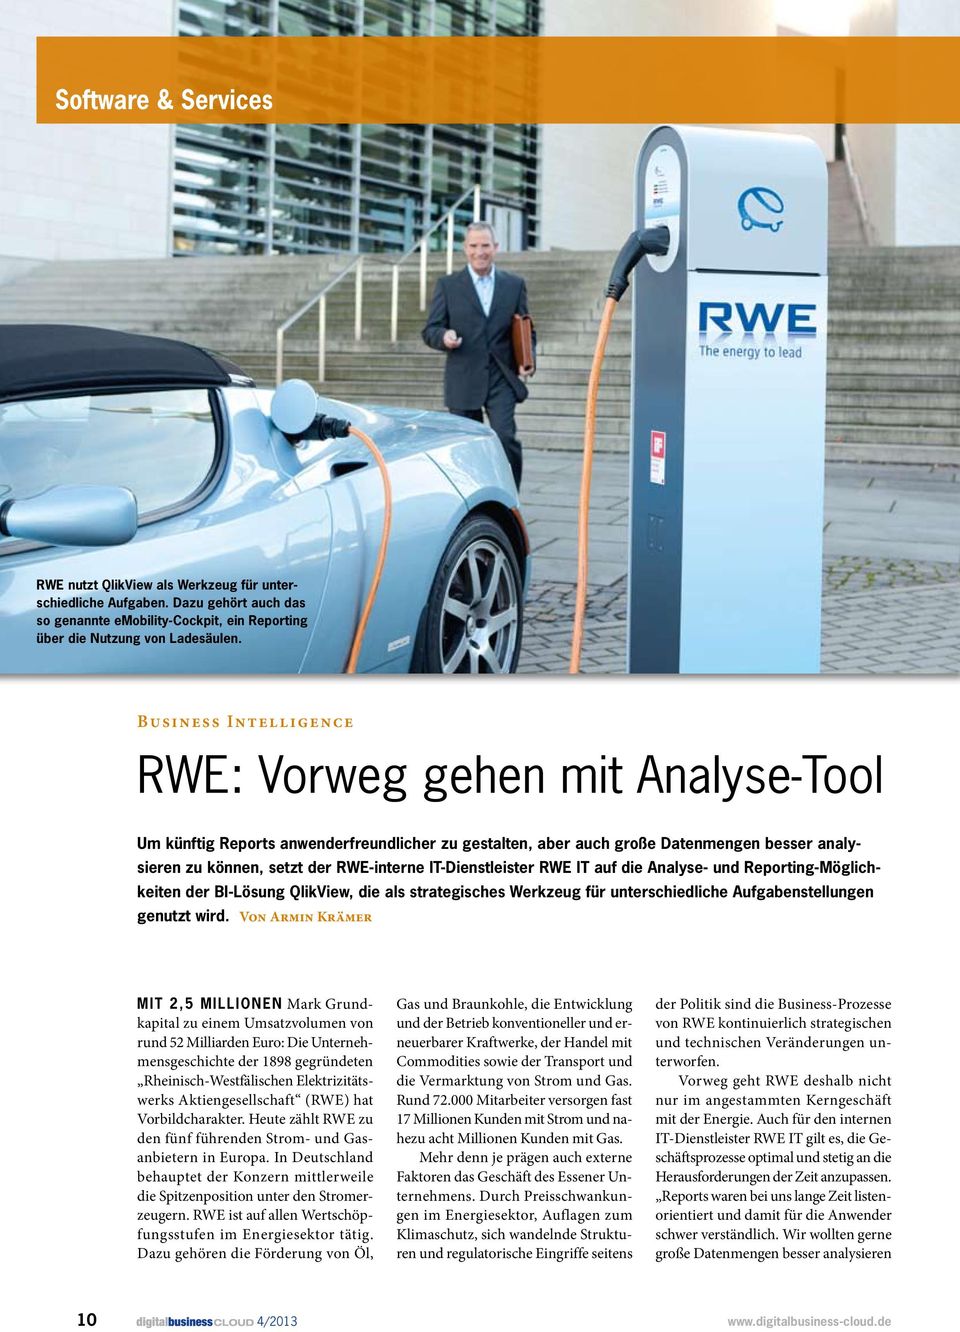 IT-Dienstleister RWE IT auf die Analyse- und Reporting-Möglichkeiten der BI-Lösung QlikView, die als strategisches Werkzeug für unterschiedliche Aufgabenstellungen genutzt wird.